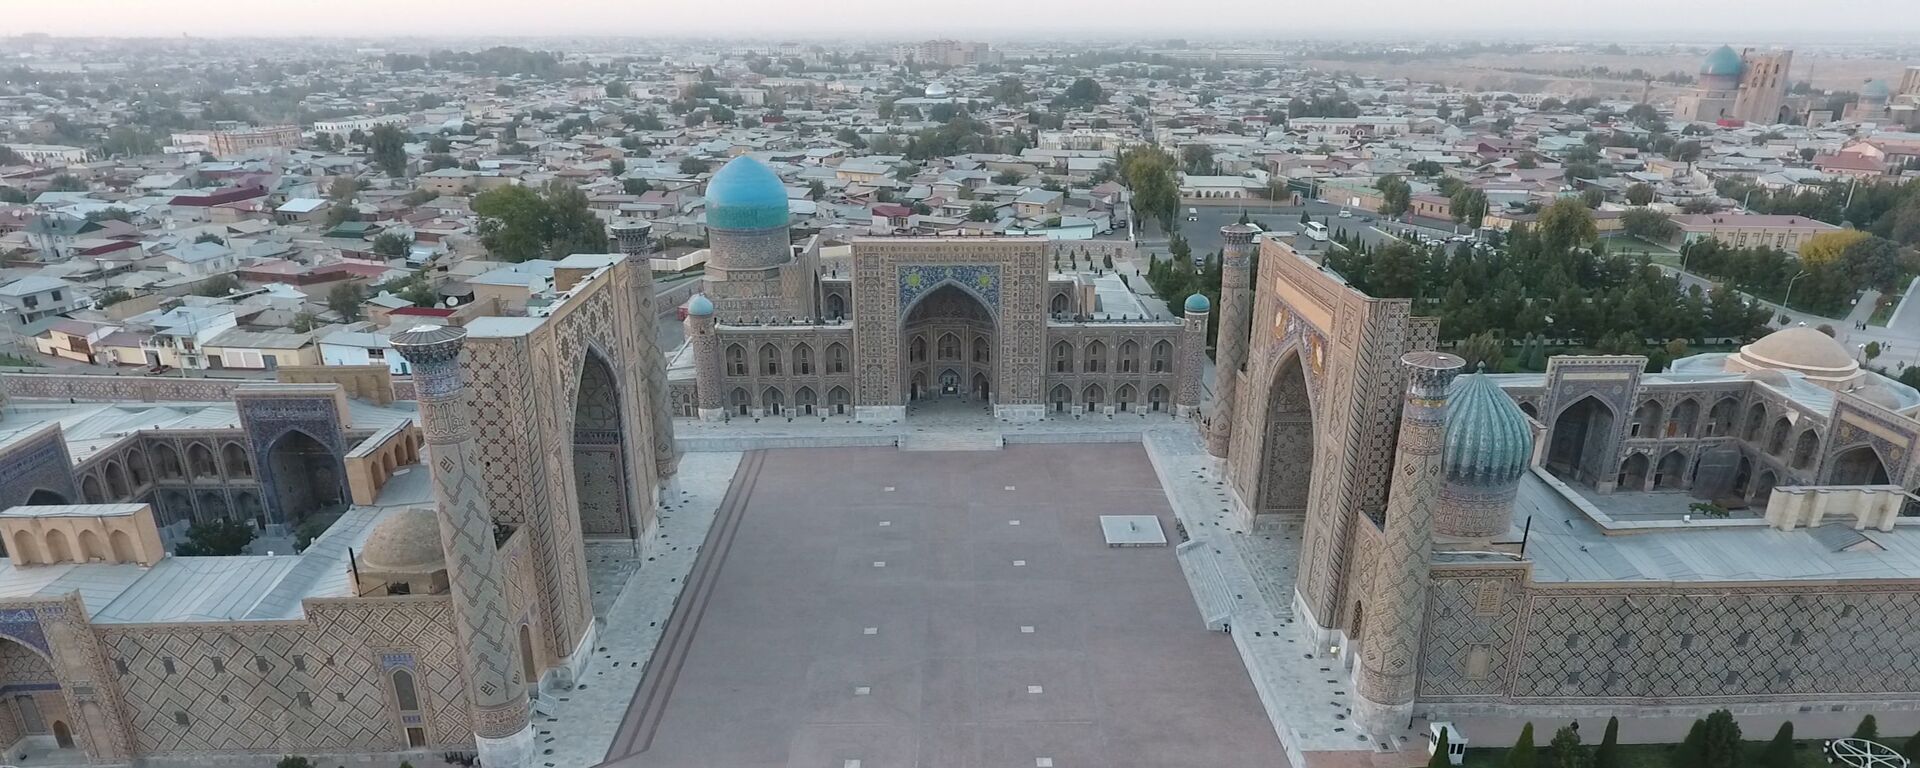 Вид сверху на площадь Регистан в Самарканде - Sputnik Узбекистан, 1920, 01.02.2021